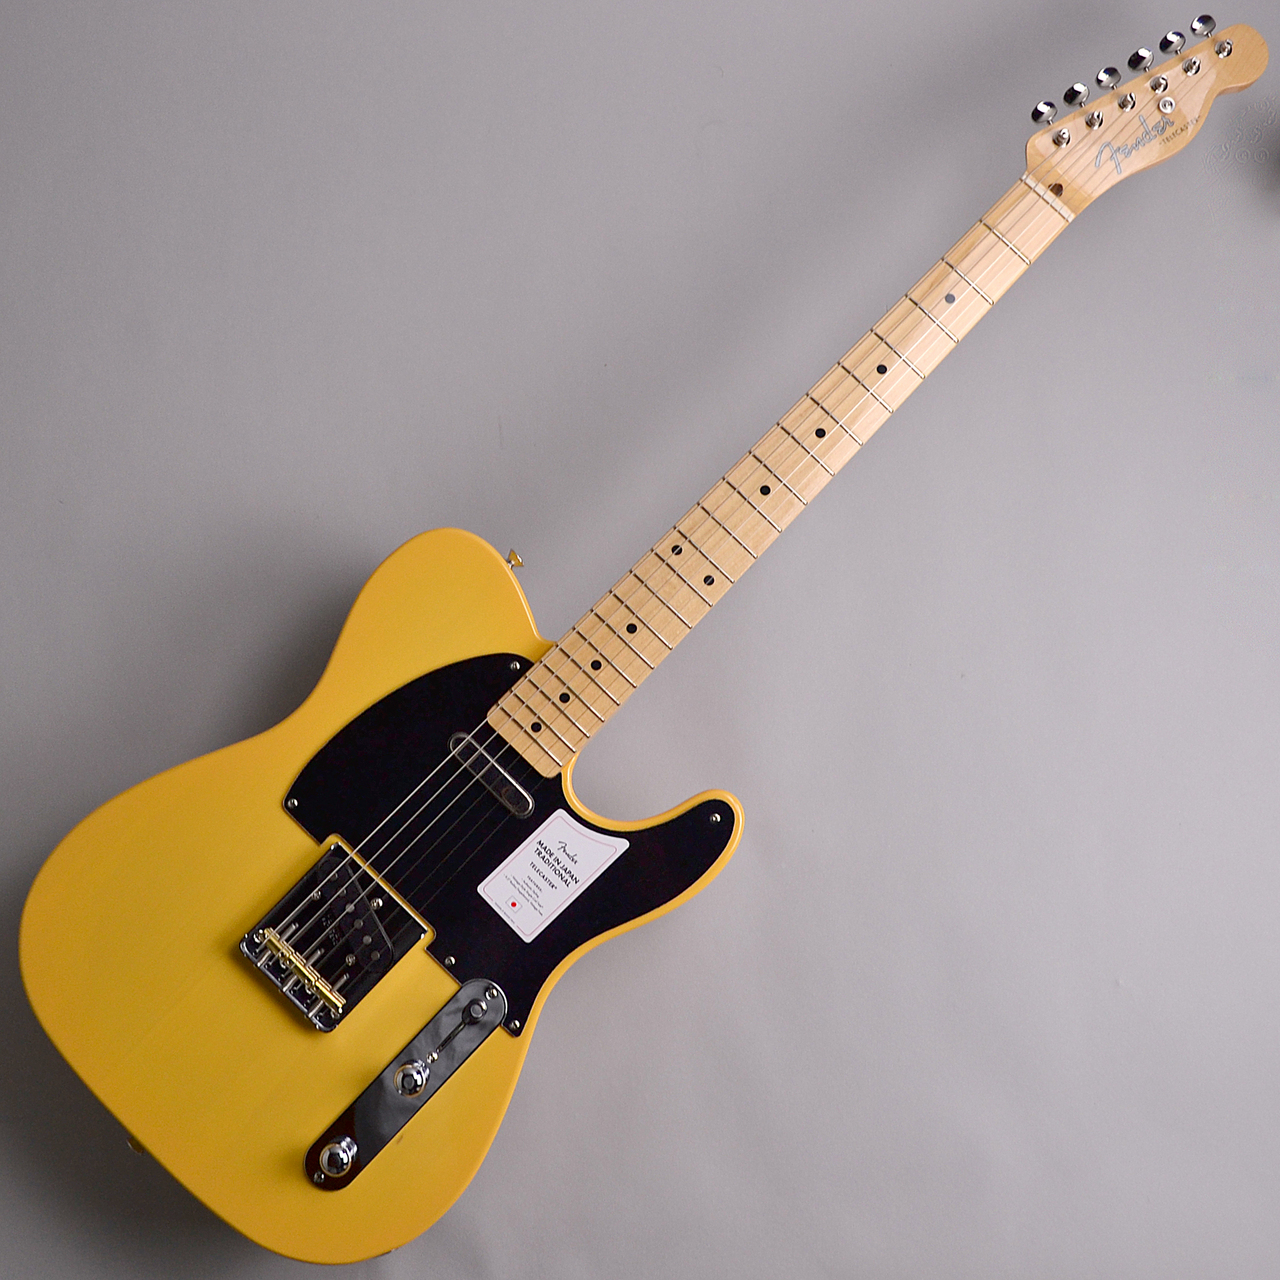 【入荷情報】Fender Made in Japan Traditional 50s Telecaster Butterscotch Blond